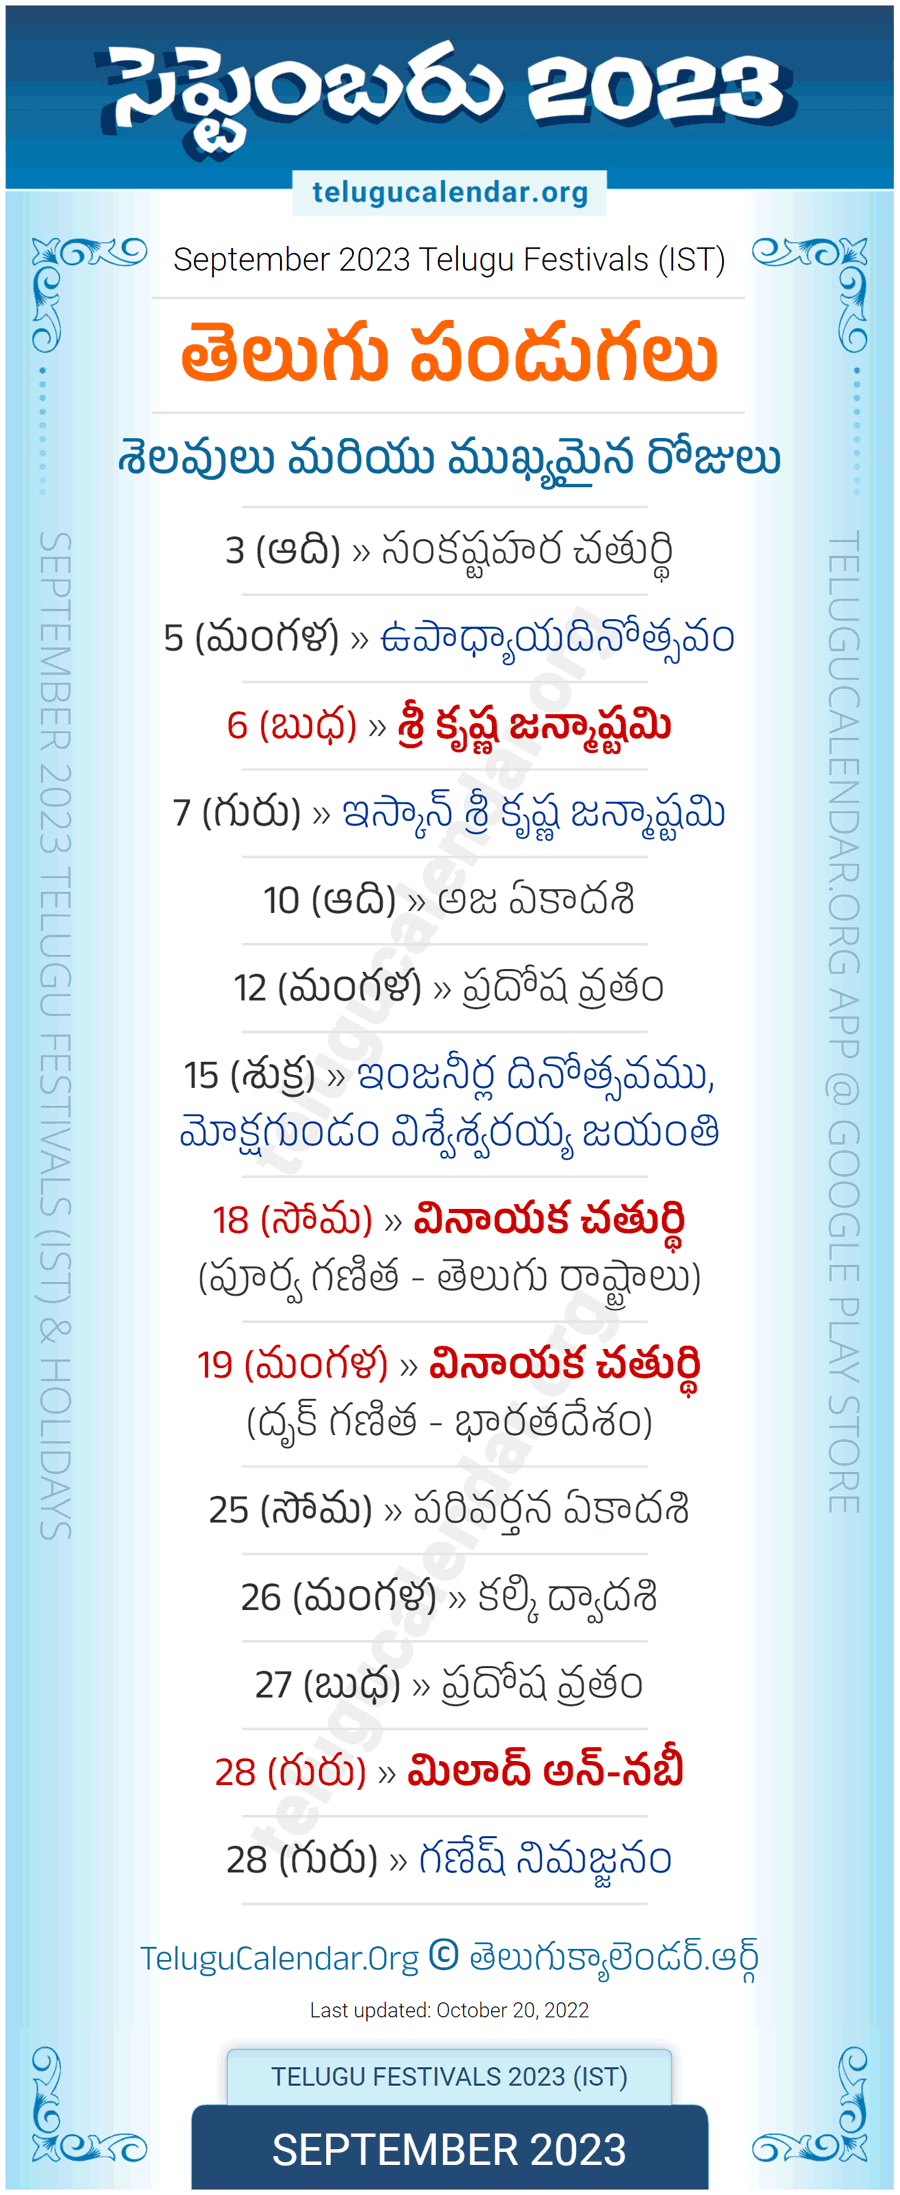 Telugu Festivals 2023 September